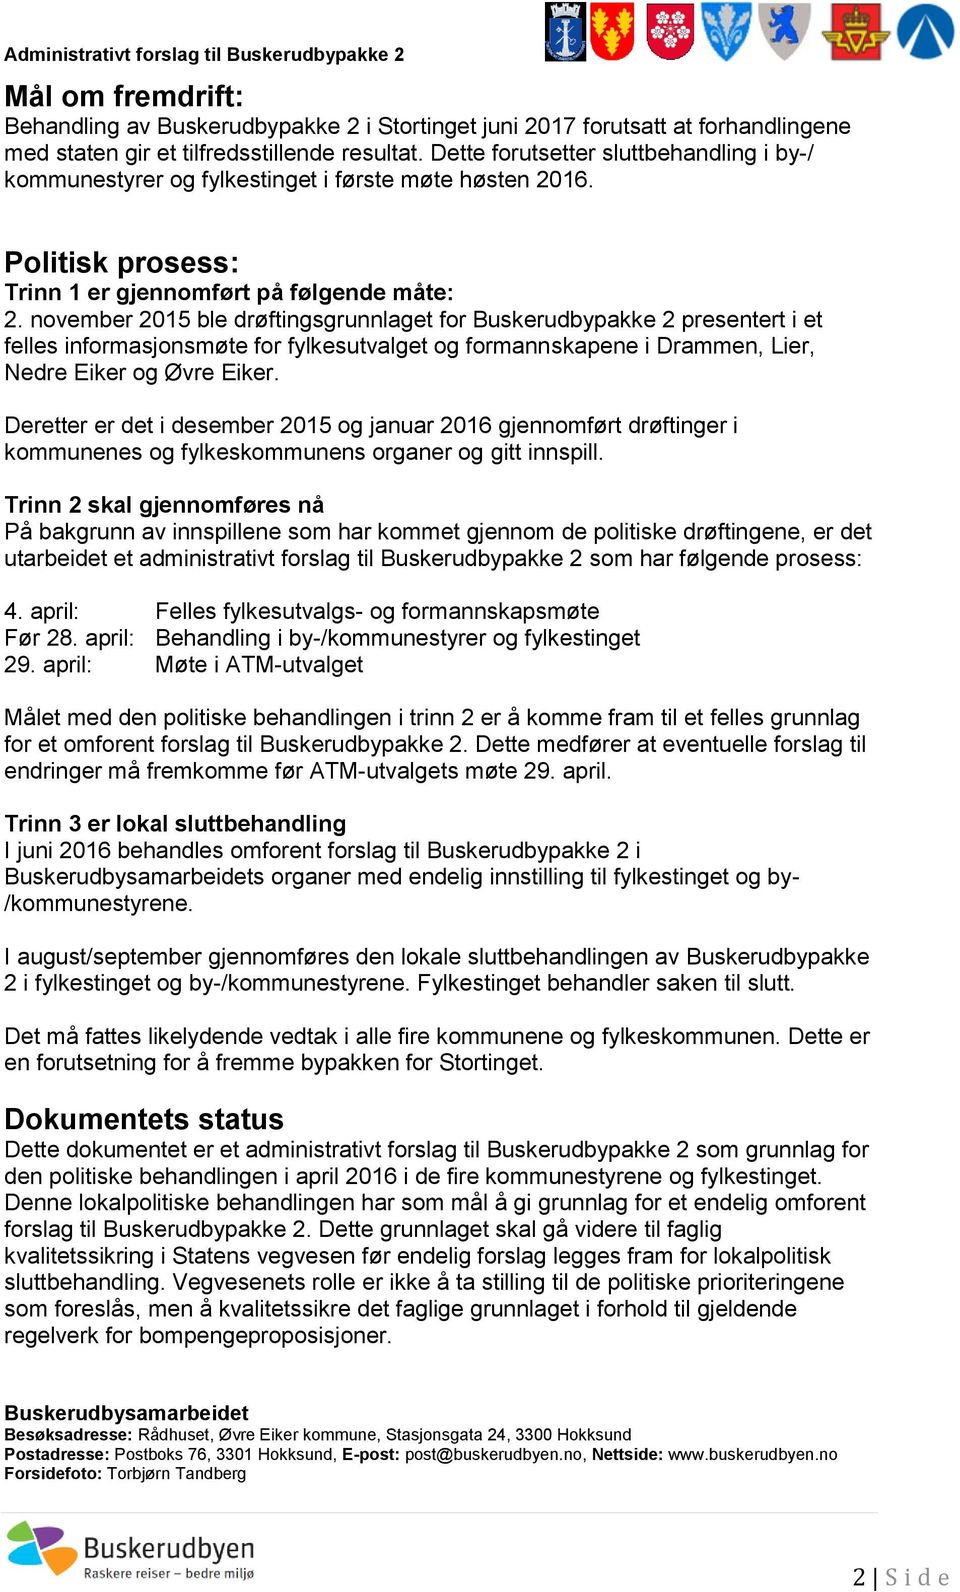 november 2015 ble drøftingsgrunnlaget for Buskerudbypakke 2 presentert i et felles informasjonsmøte for fylkesutvalget og formannskapene i Drammen, Lier, Nedre Eiker og Øvre Eiker.